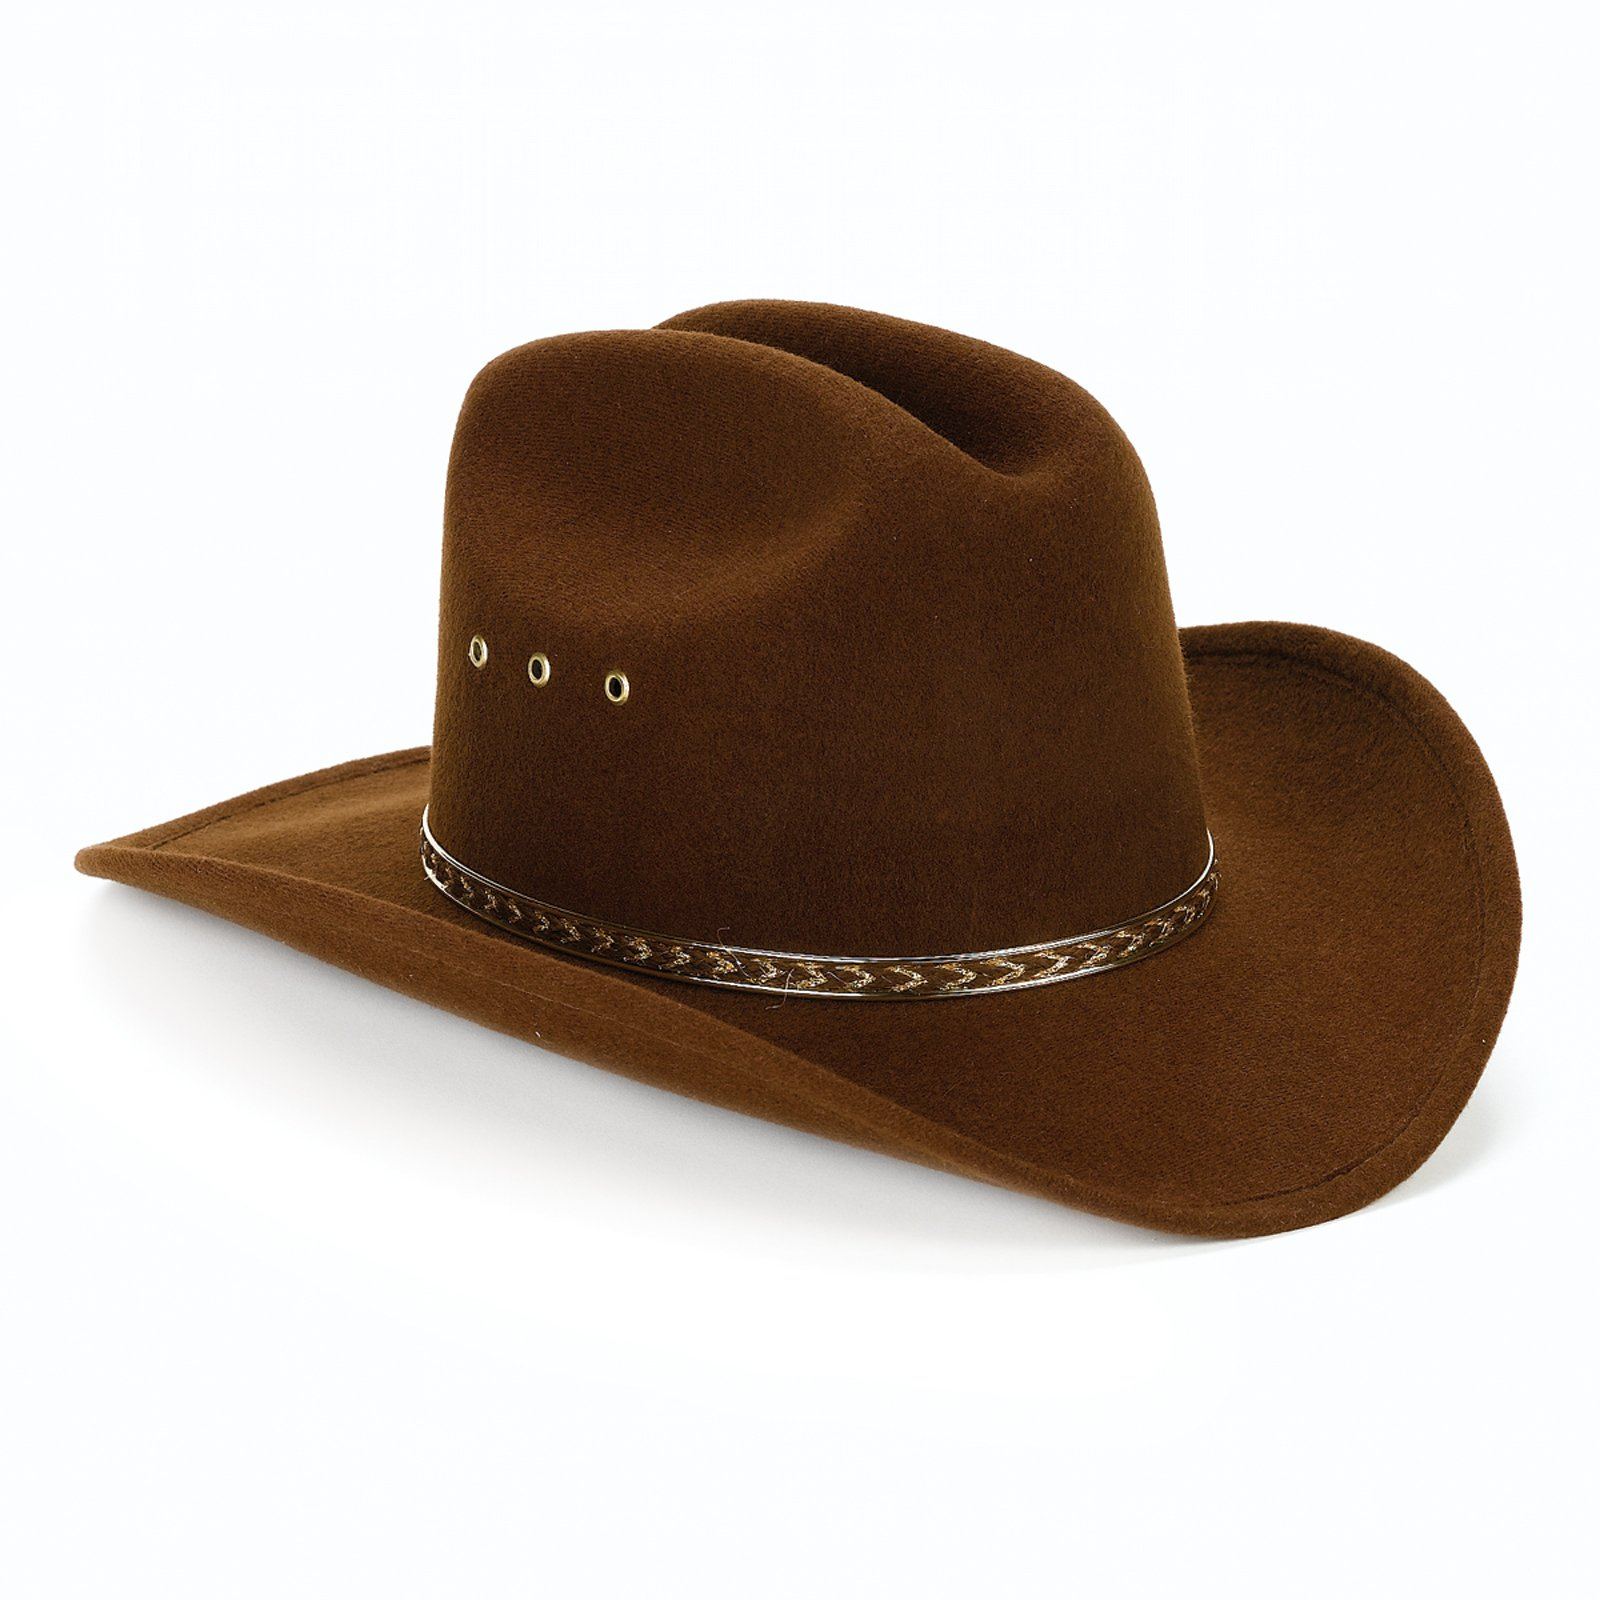 cowboy hat clipart - photo #36